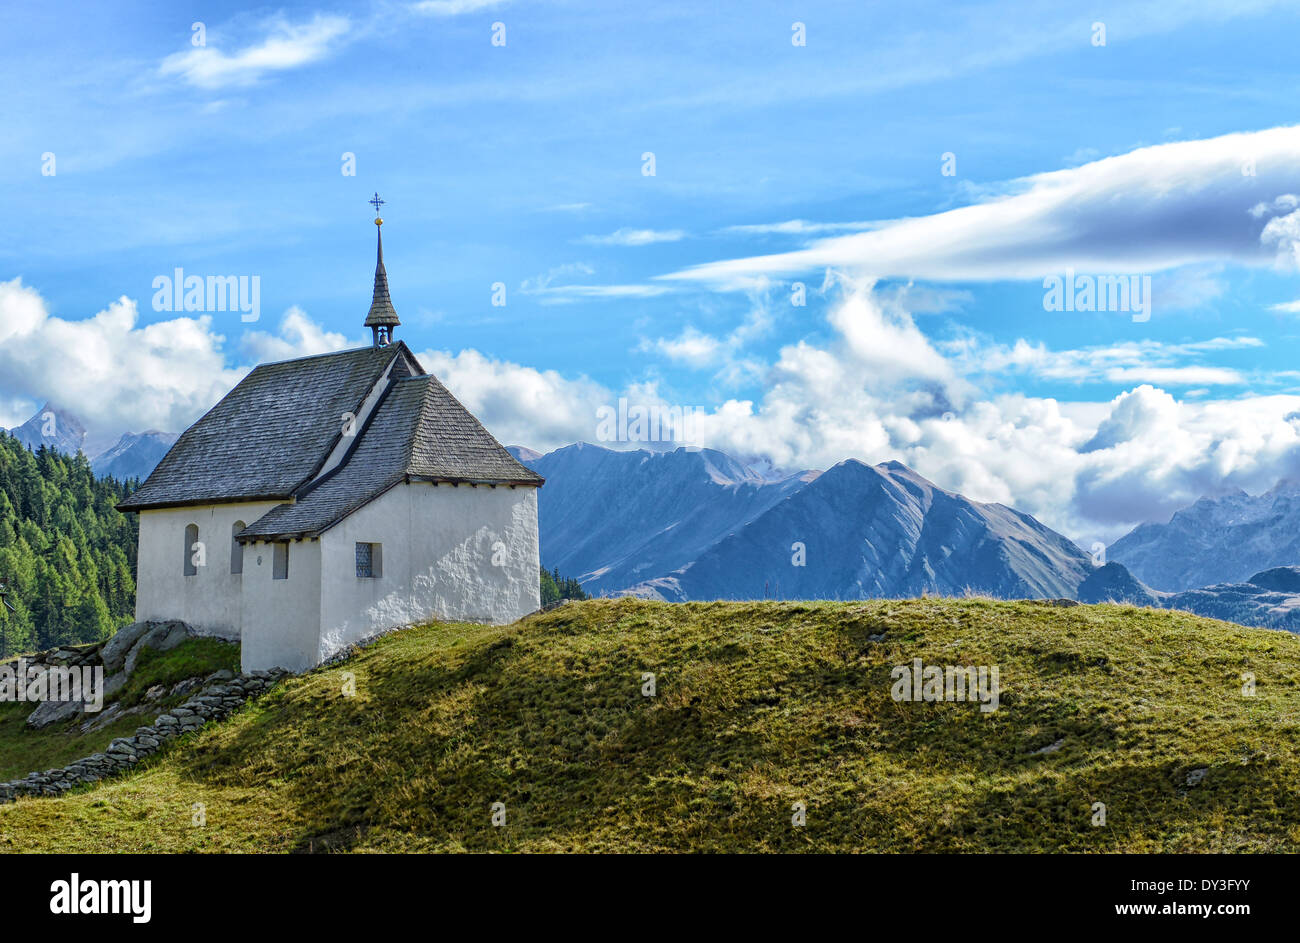 Church in Bettmeralp (Swiss Alps), Switzerland Stock Photo